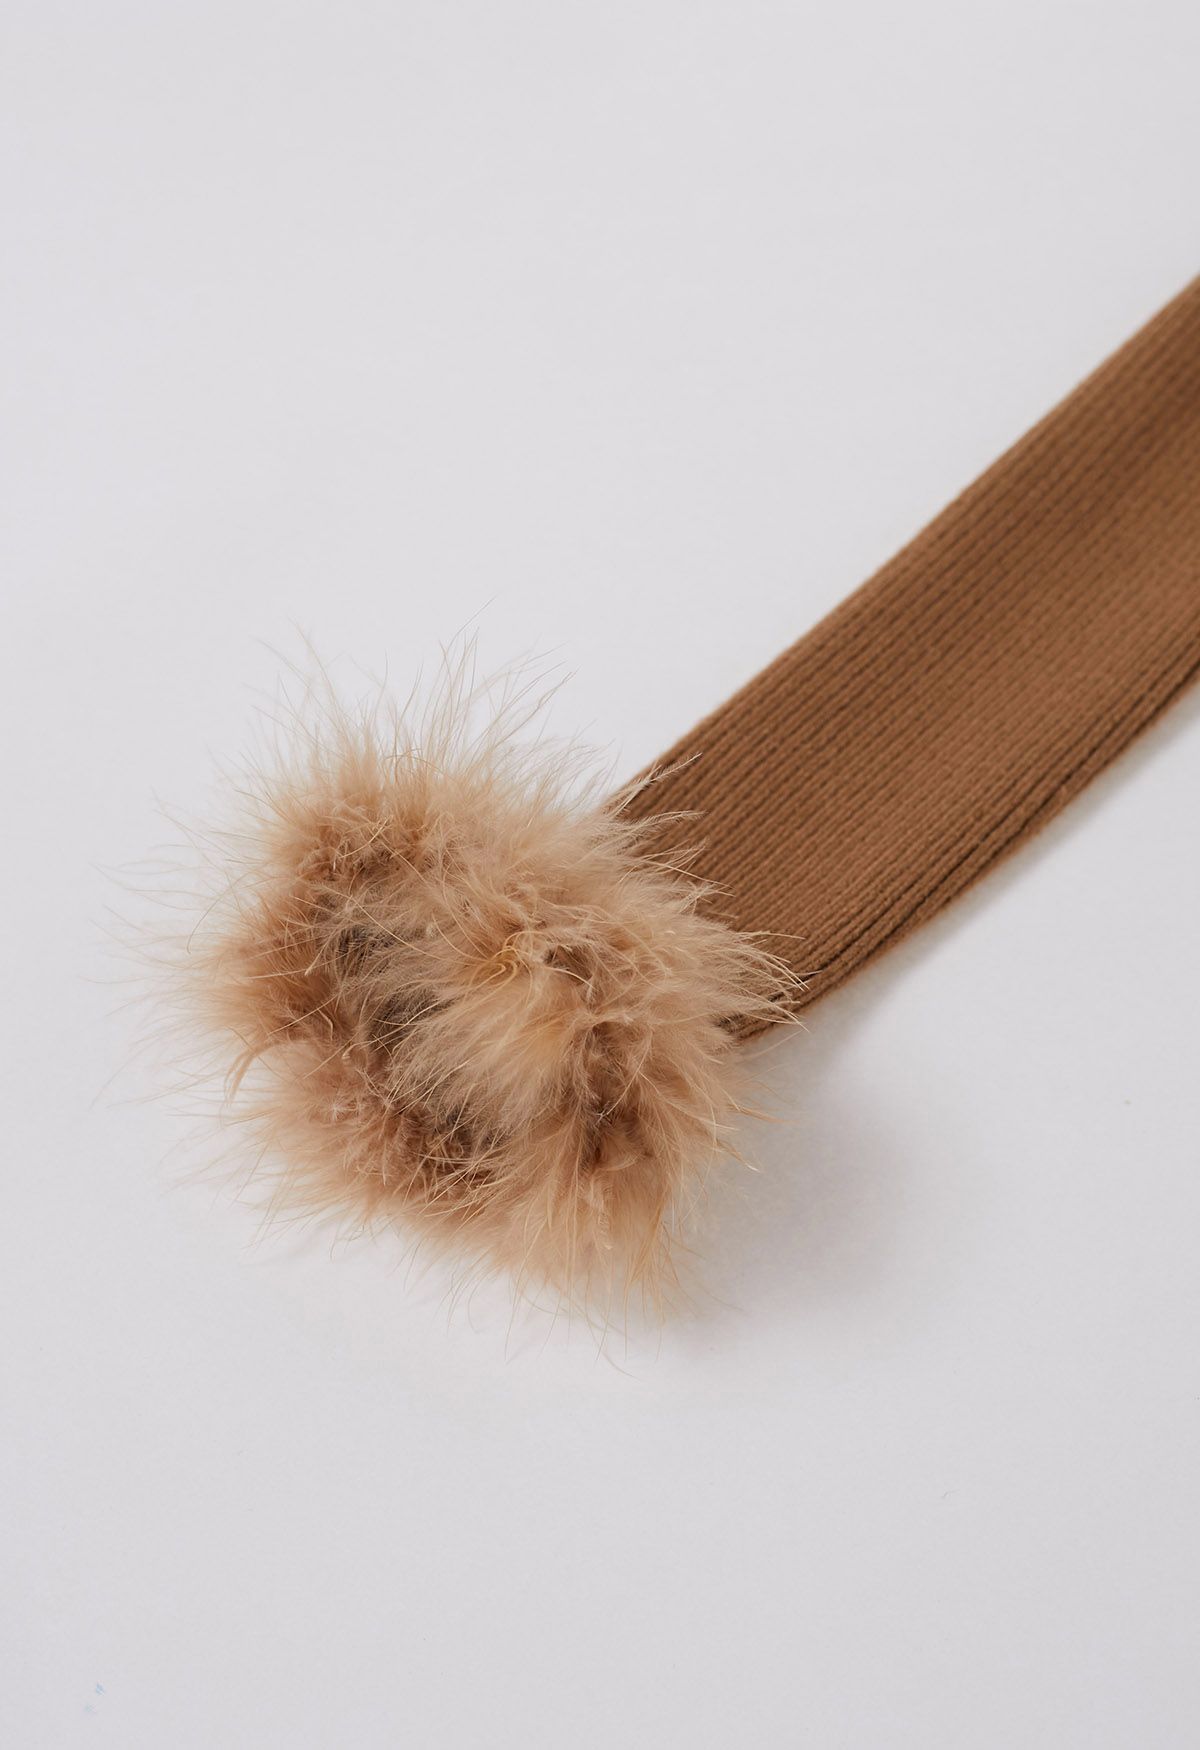 Wavy Neckline Feather Trim Cuffs Knit Top in Tan